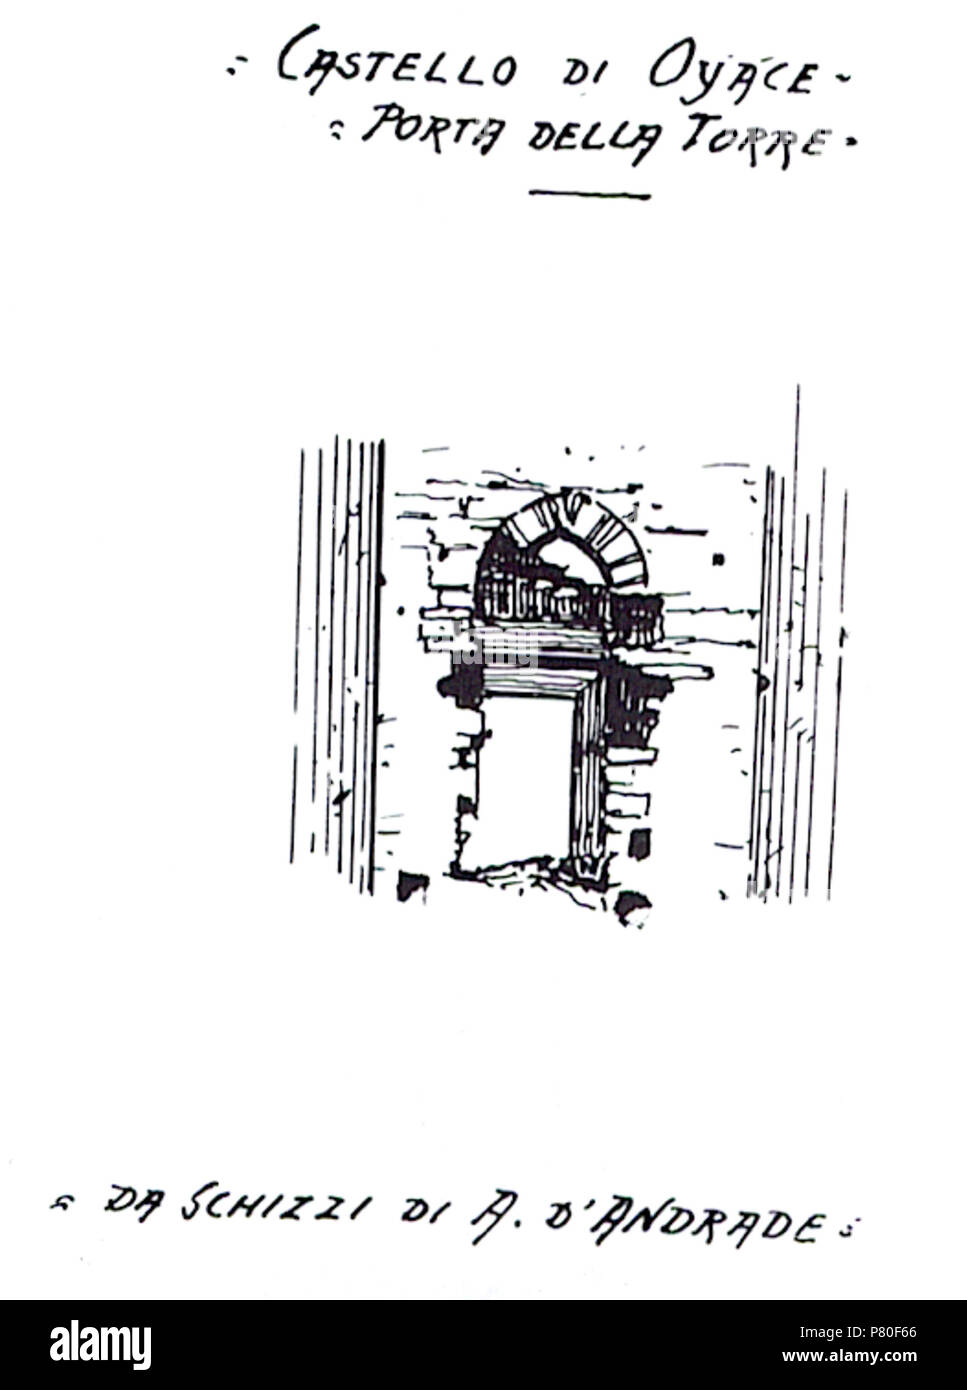 Ingresso rialzato della Tornalla (Castello di Oyace), Oyace, Valle d'Aosta, Italia. before 1942 318 Porta torre tornalla nigra Stock Photo